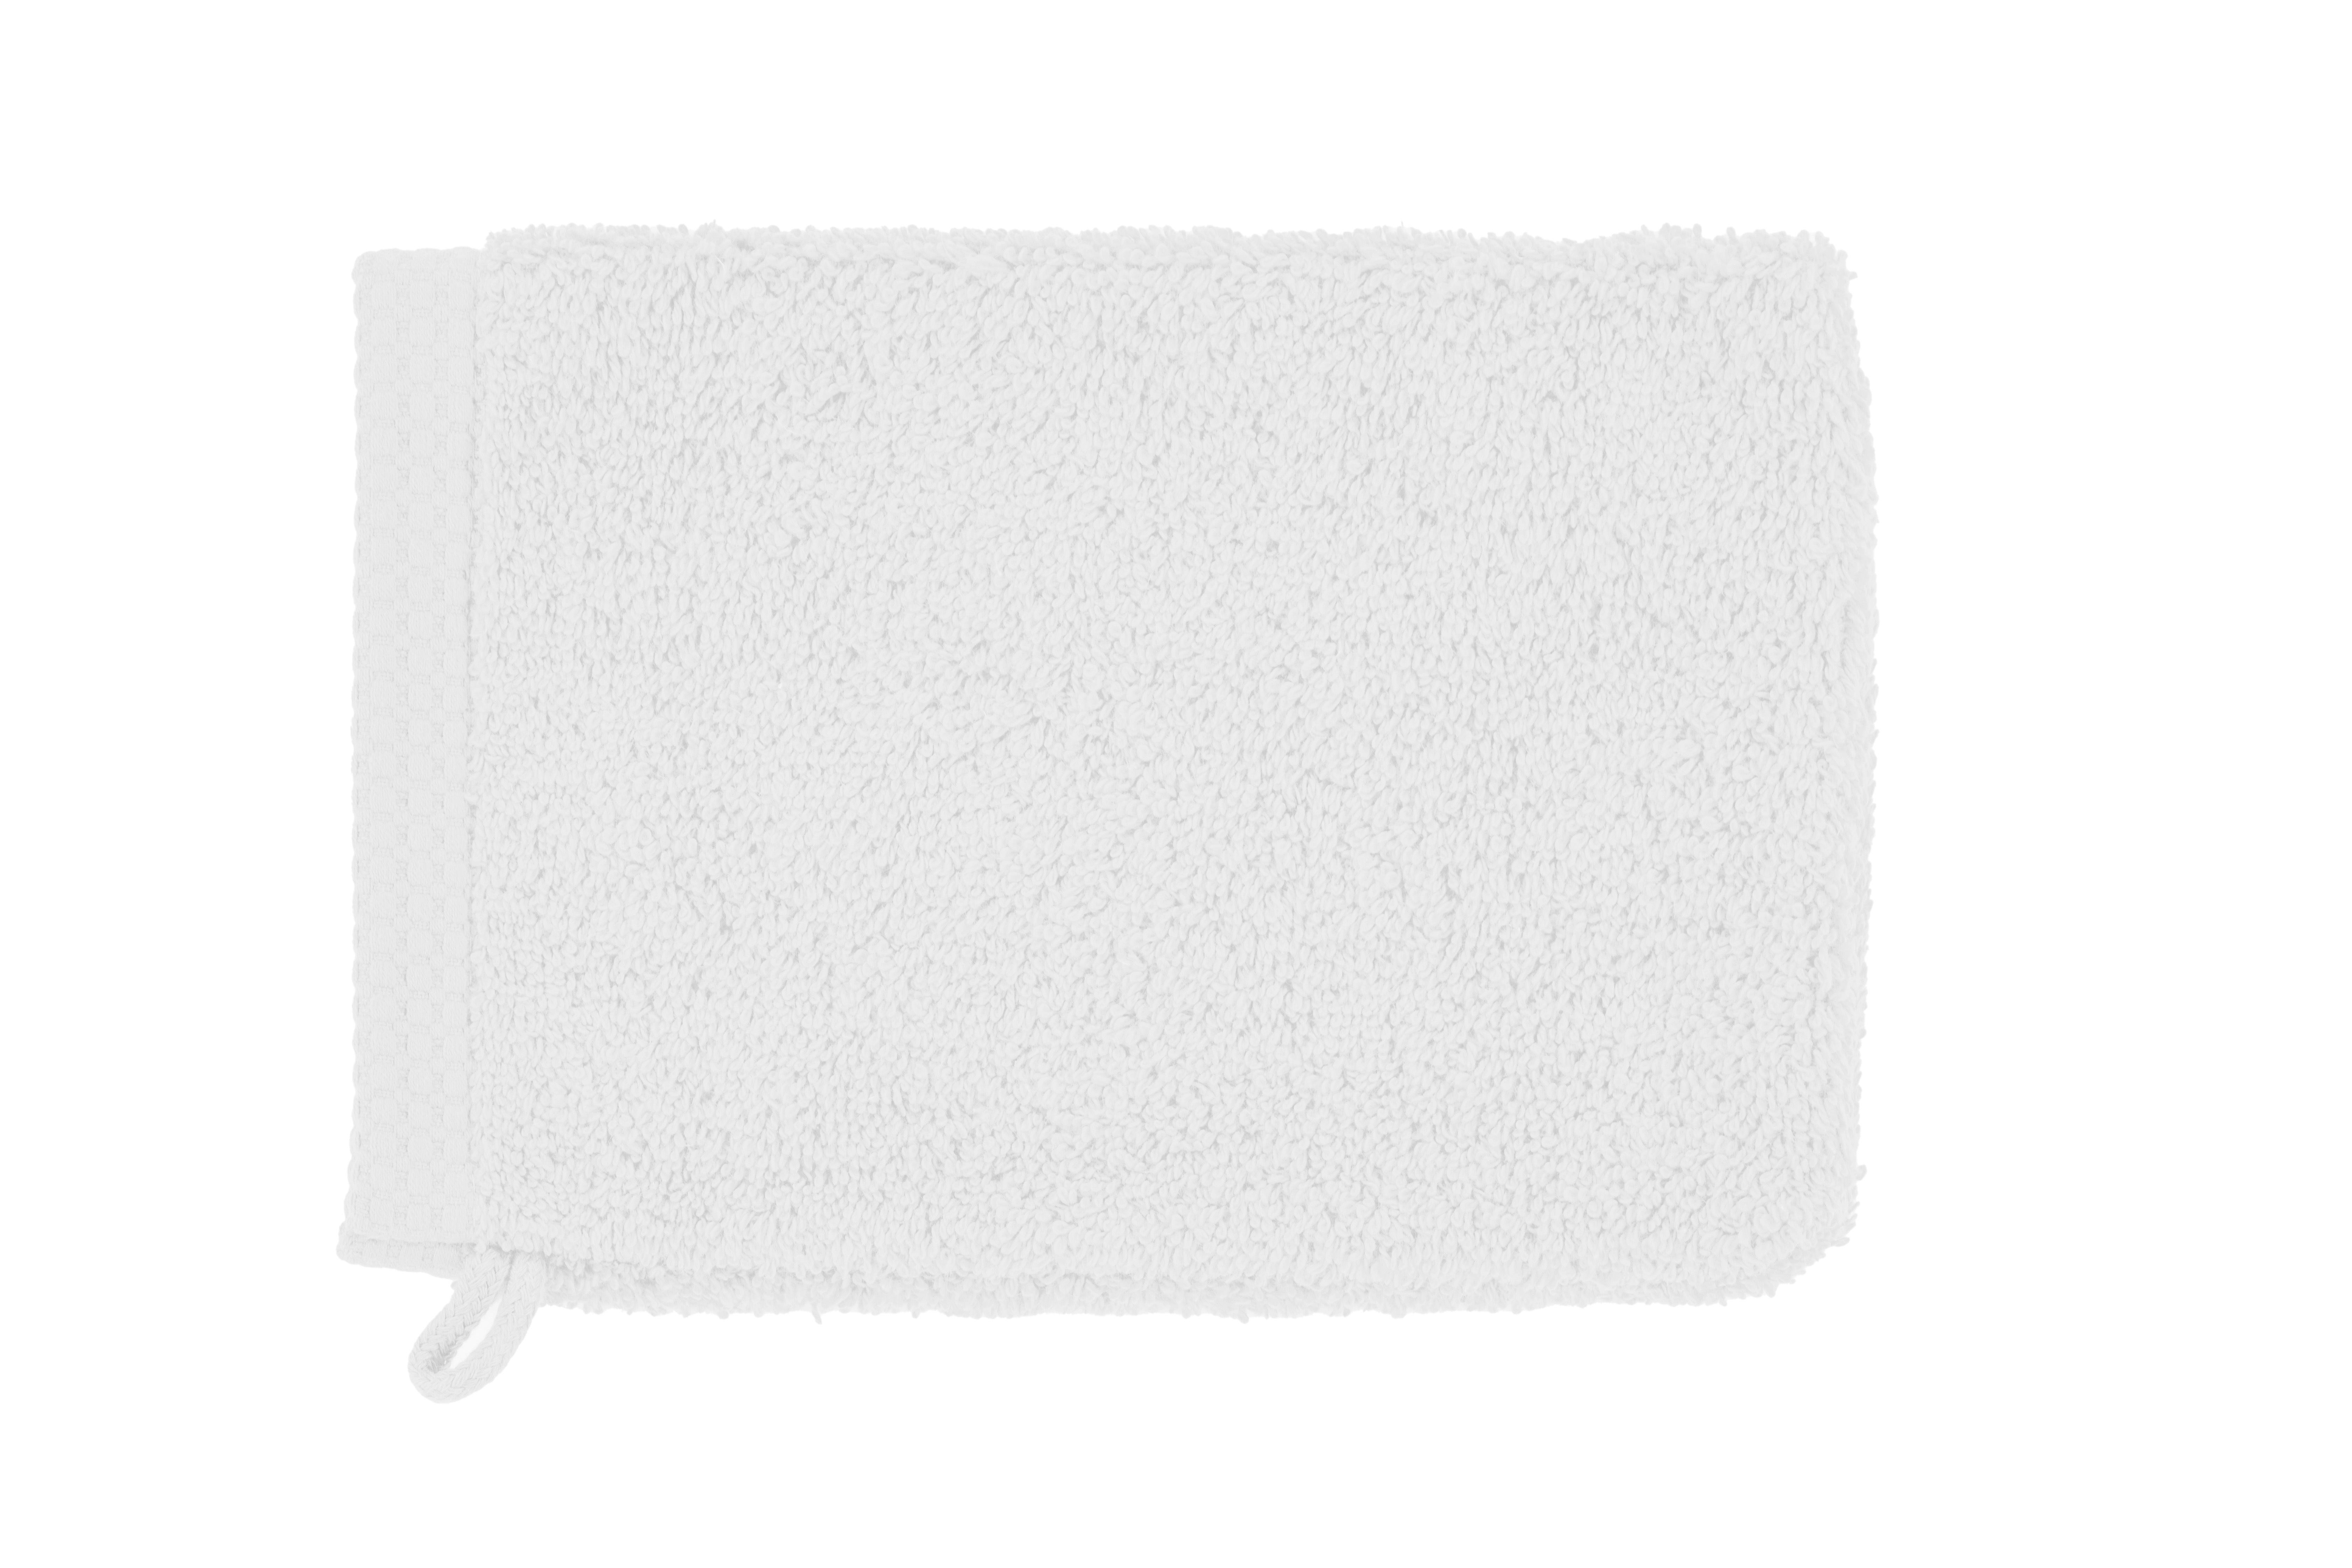 Gant de toilette DELUX 15x21cm - set/2, optic white